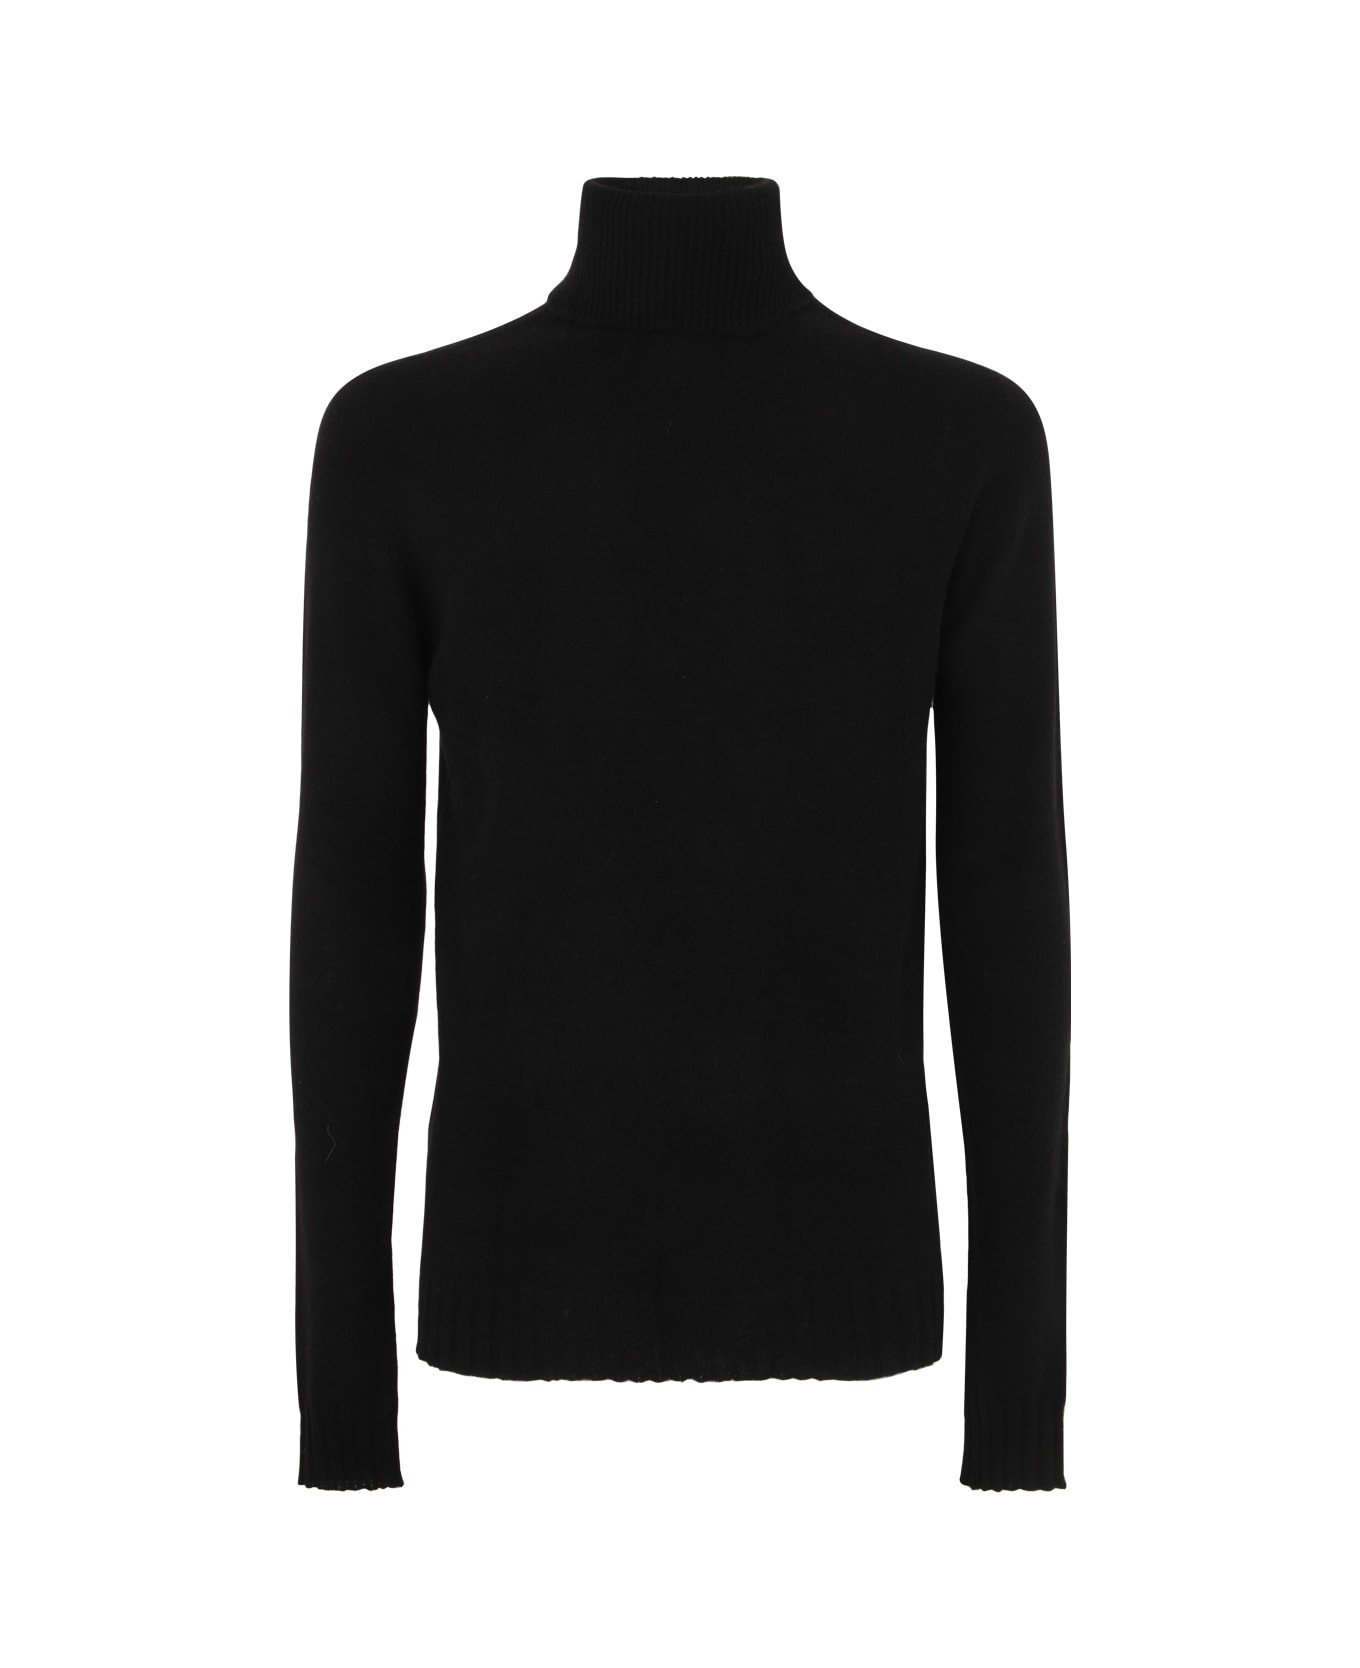 MD75 Cashmere Turtle Neck Sweater - Black ニットウェア